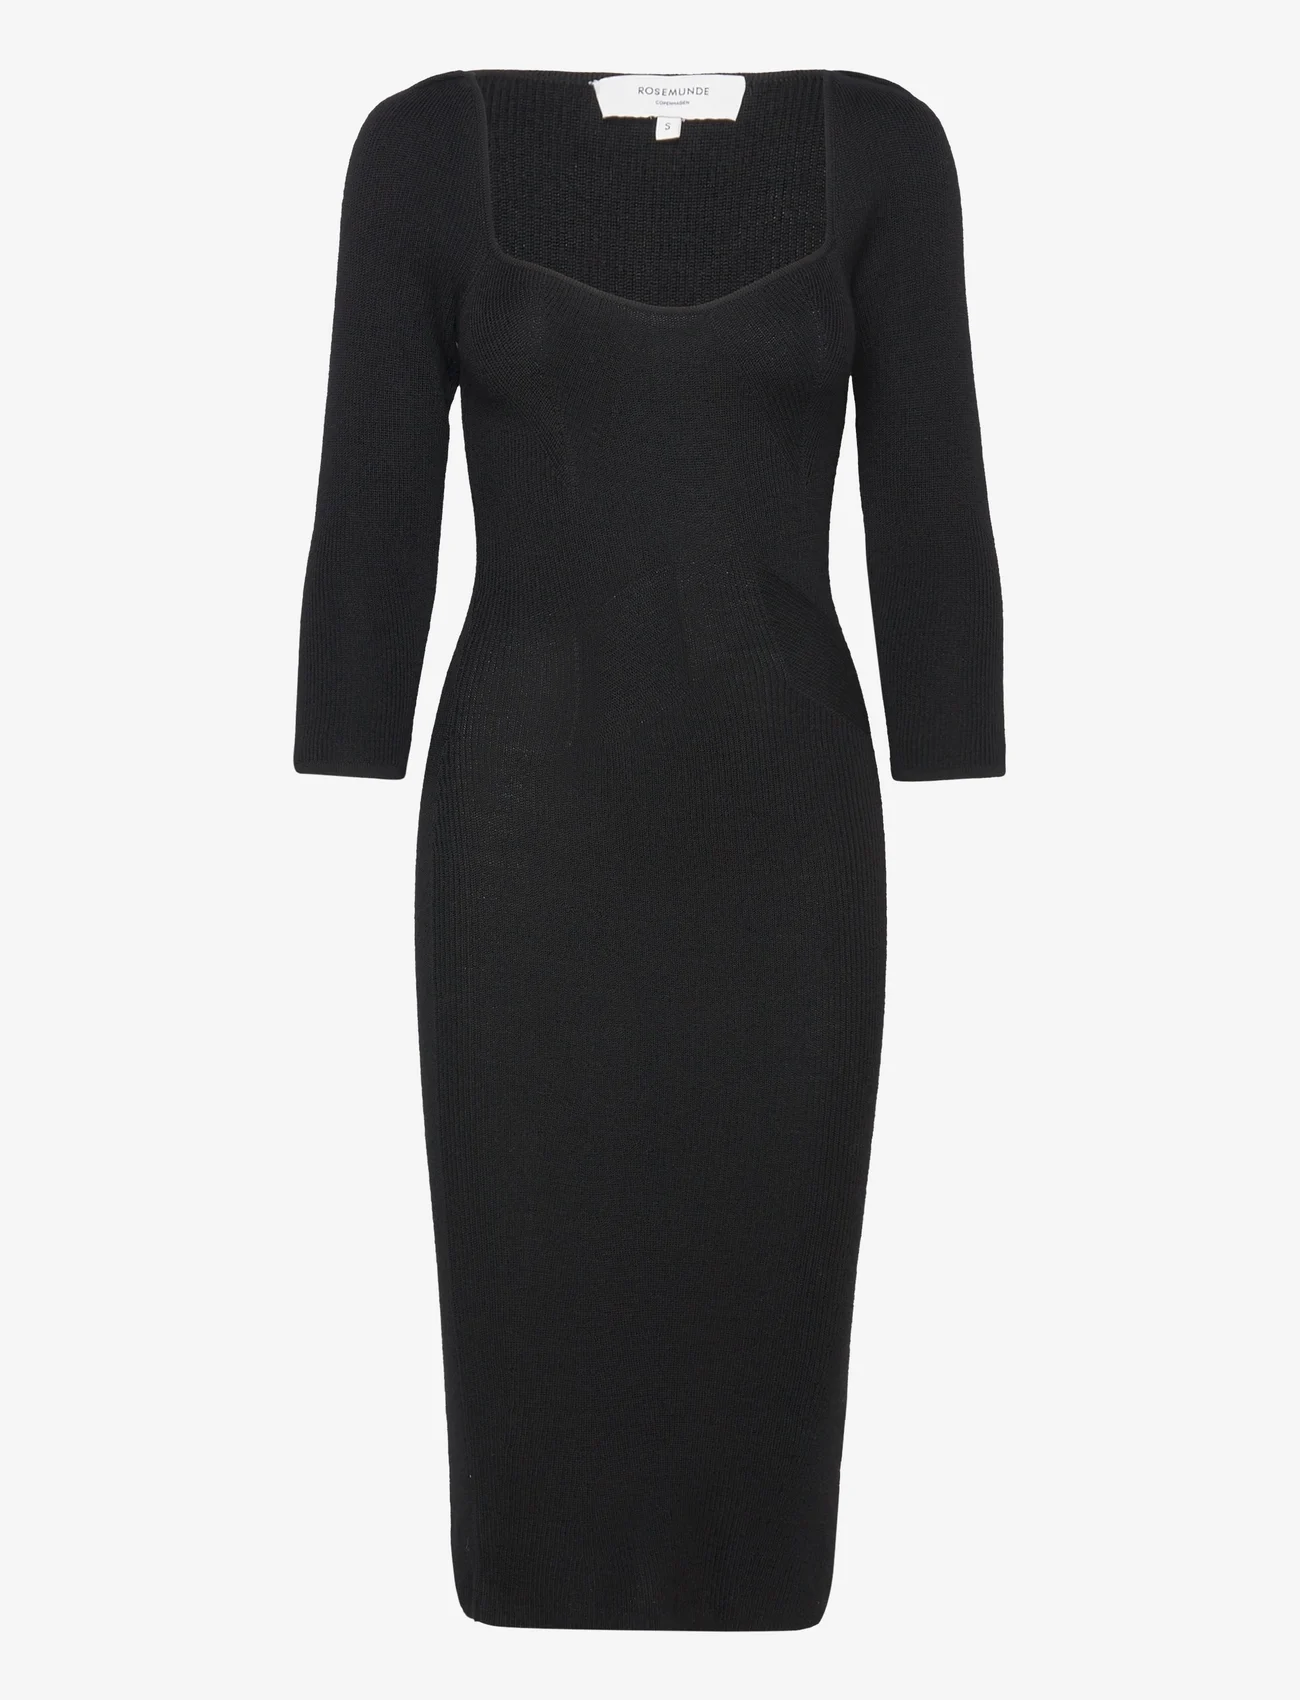 Rosemunde - Merino wool dress - etuikleider - black - 0